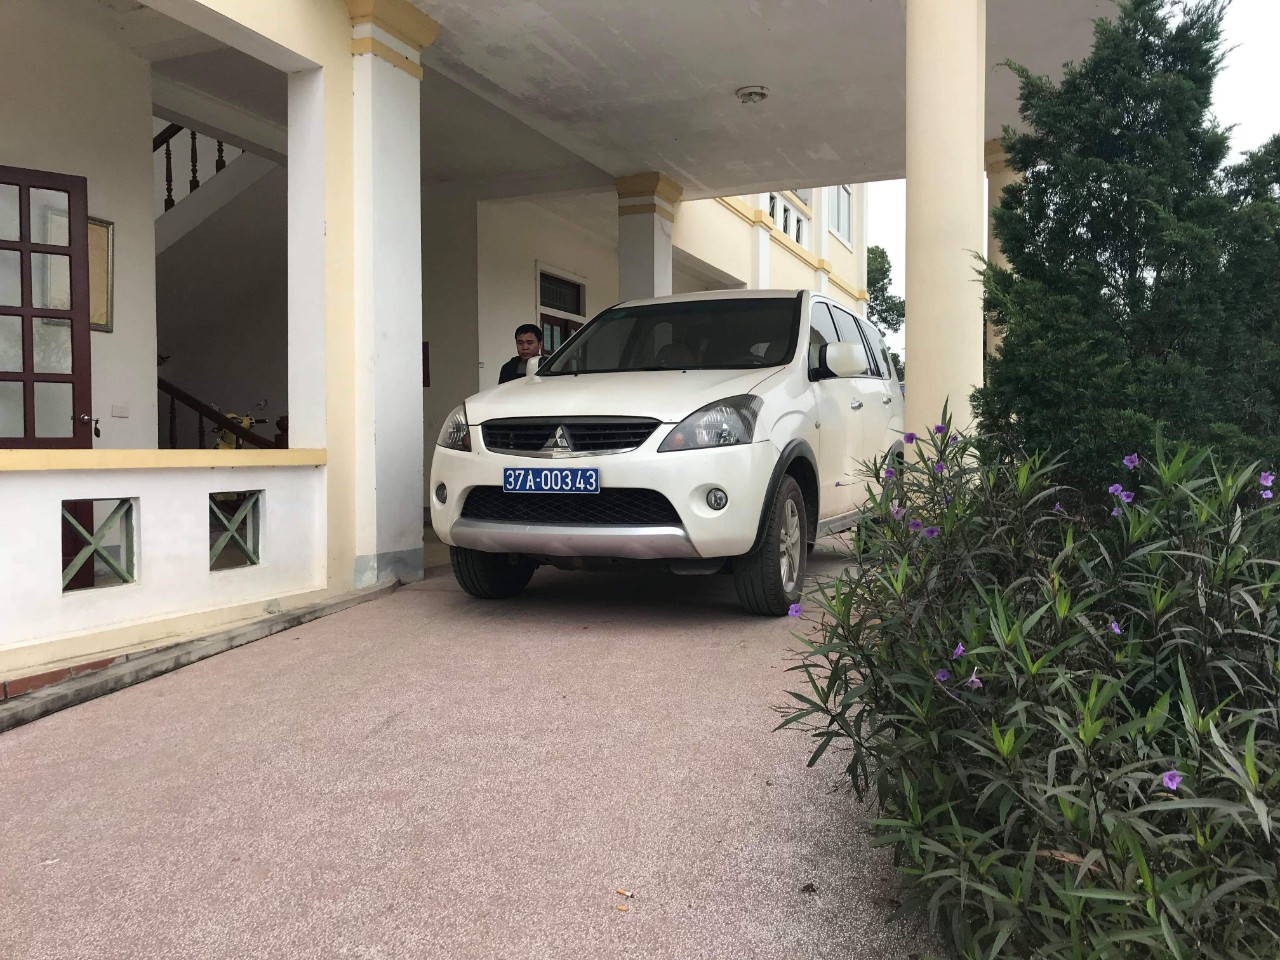 Chiếc xe được cho là chở 3 cán bộ QLTT vào nhà ông Vi Văn Hùng ở xã Ngọc Lâm, huyện Thanh Chương kiểm tra hành vi hành nghề